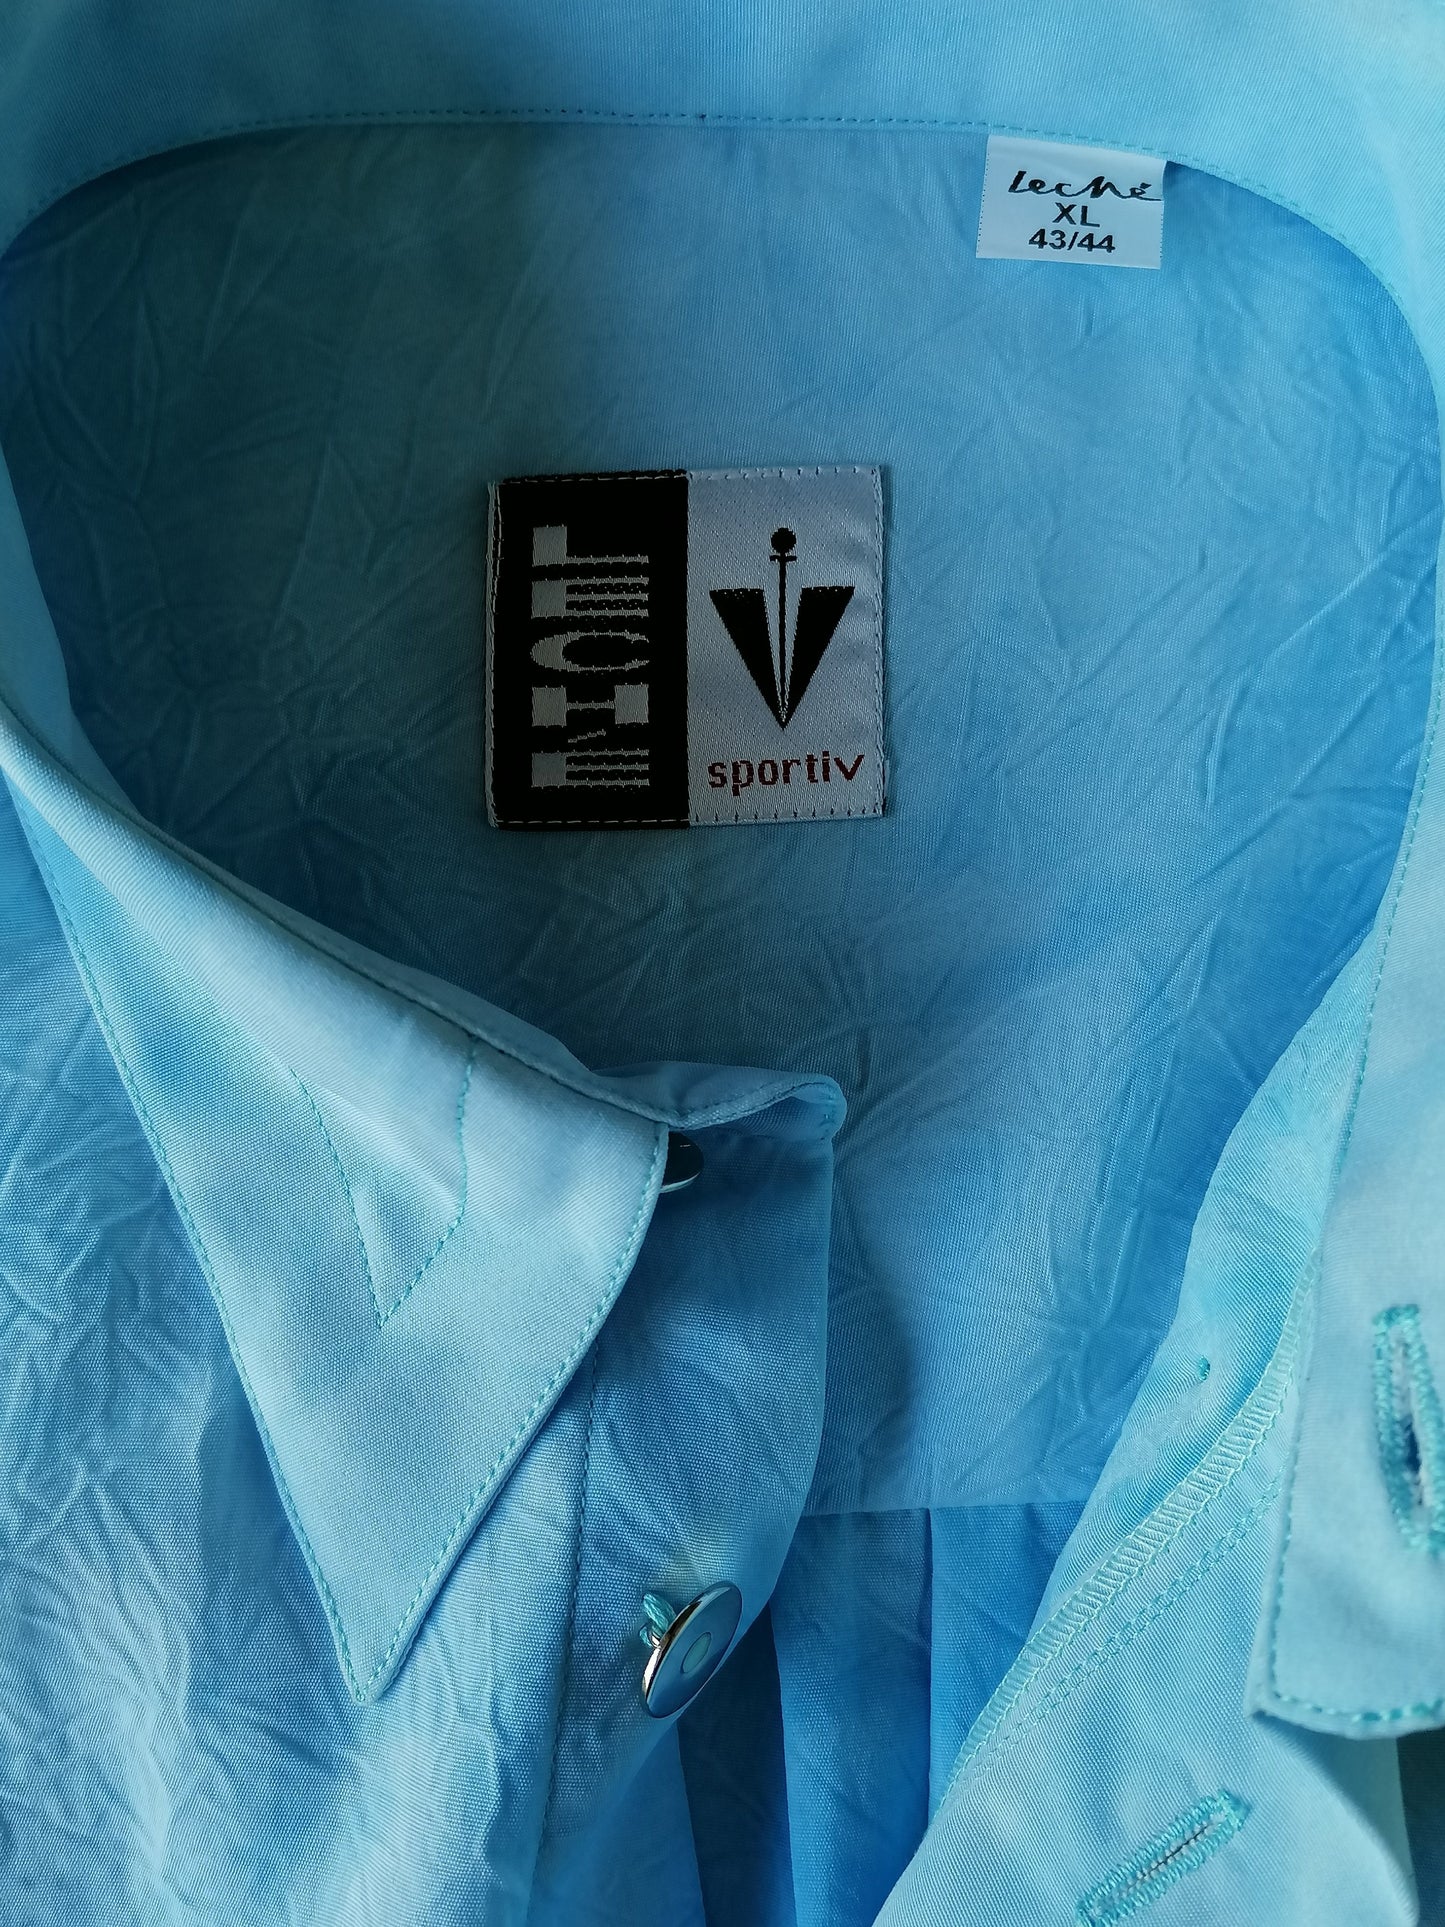 Vintage Leche overhemd korte mouw. Licht Blauw gekleurd met wrinkle effect. Maat XL